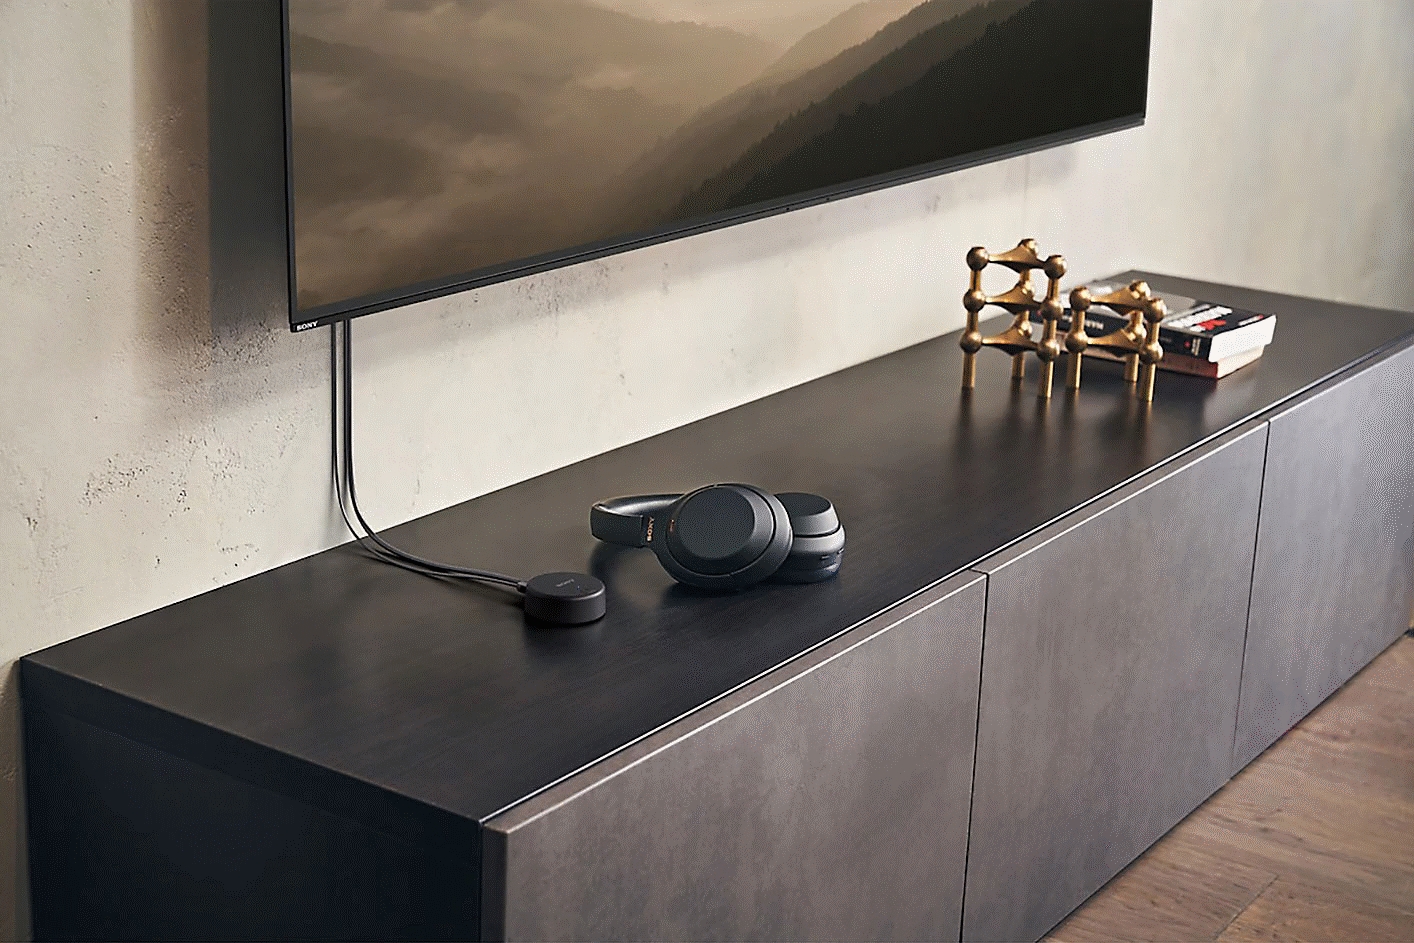 Bild der schwarzen WH-CH520 Kopfhörer von Sony auf einem Fernsehschrank unter einem wandbefestigten Fernseher